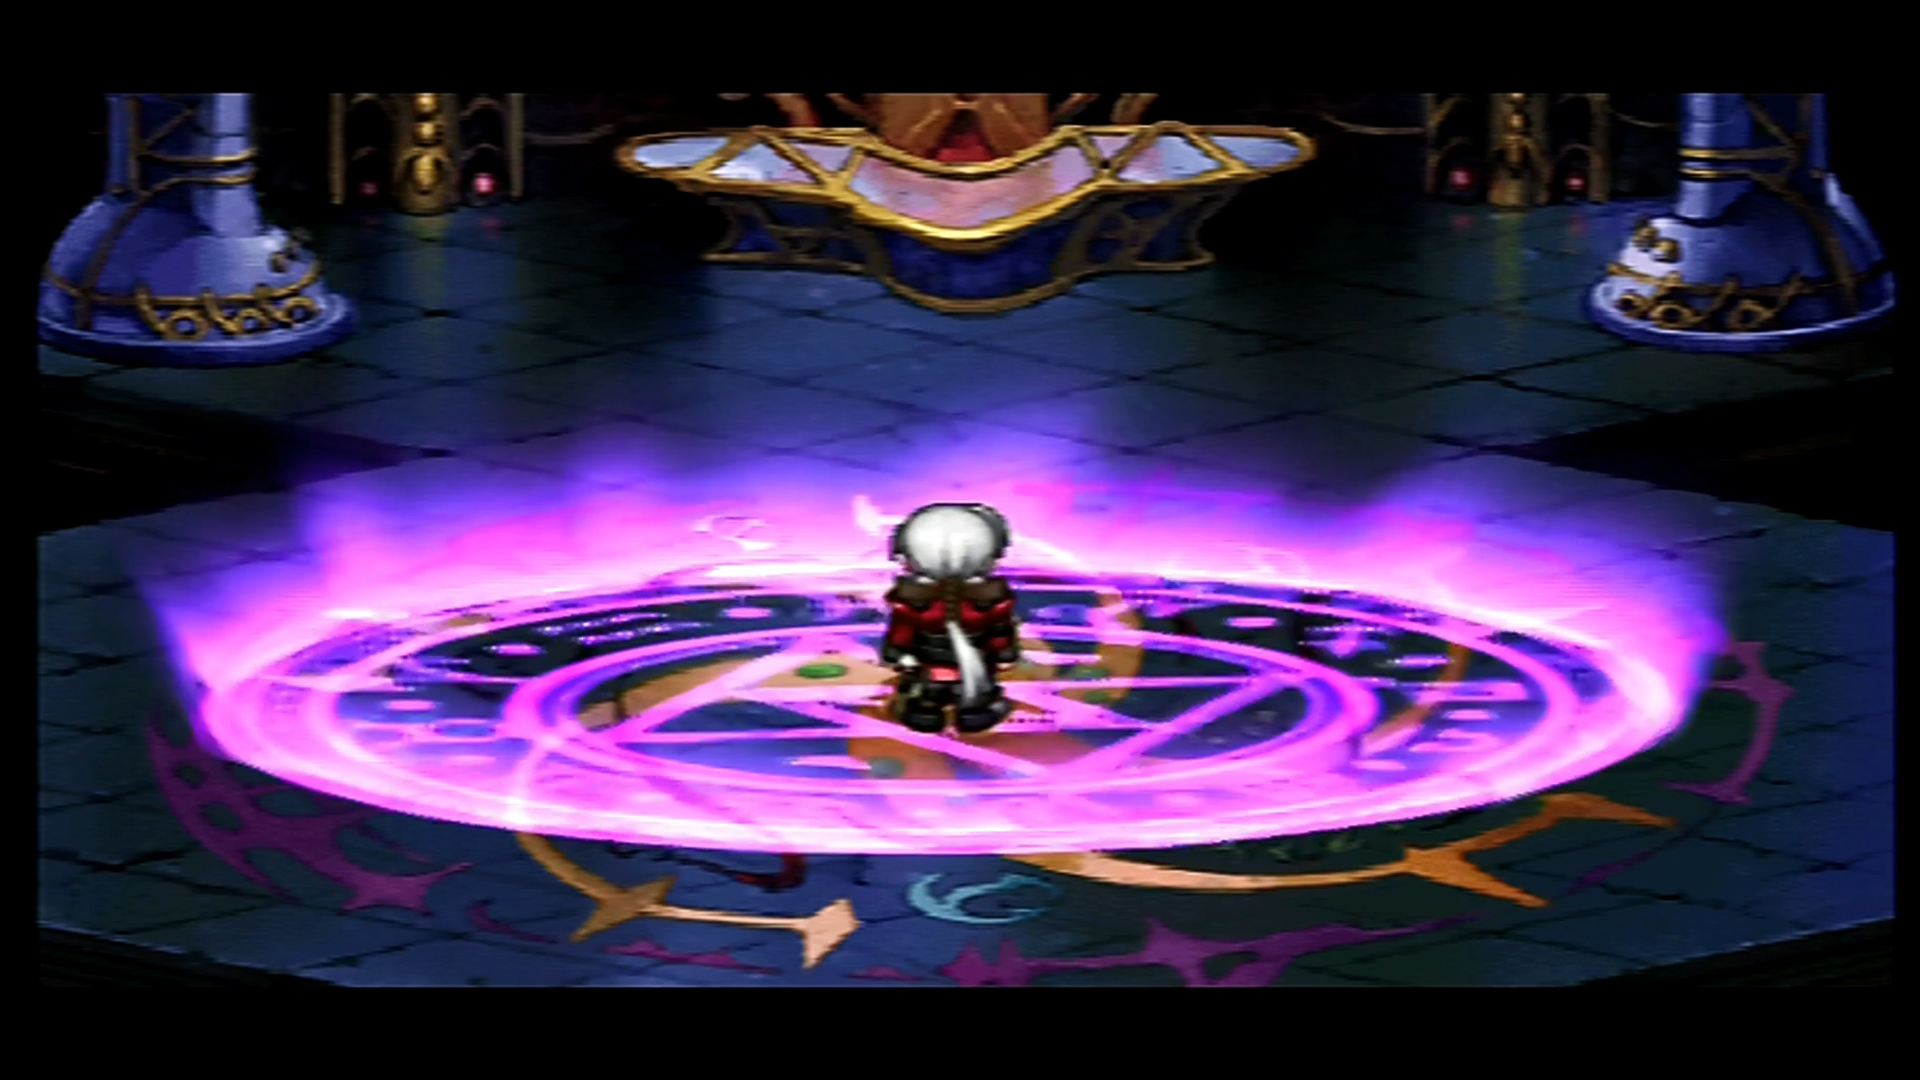 Atelier Iris: Eternal Mana: RCA upscaled to 1080p